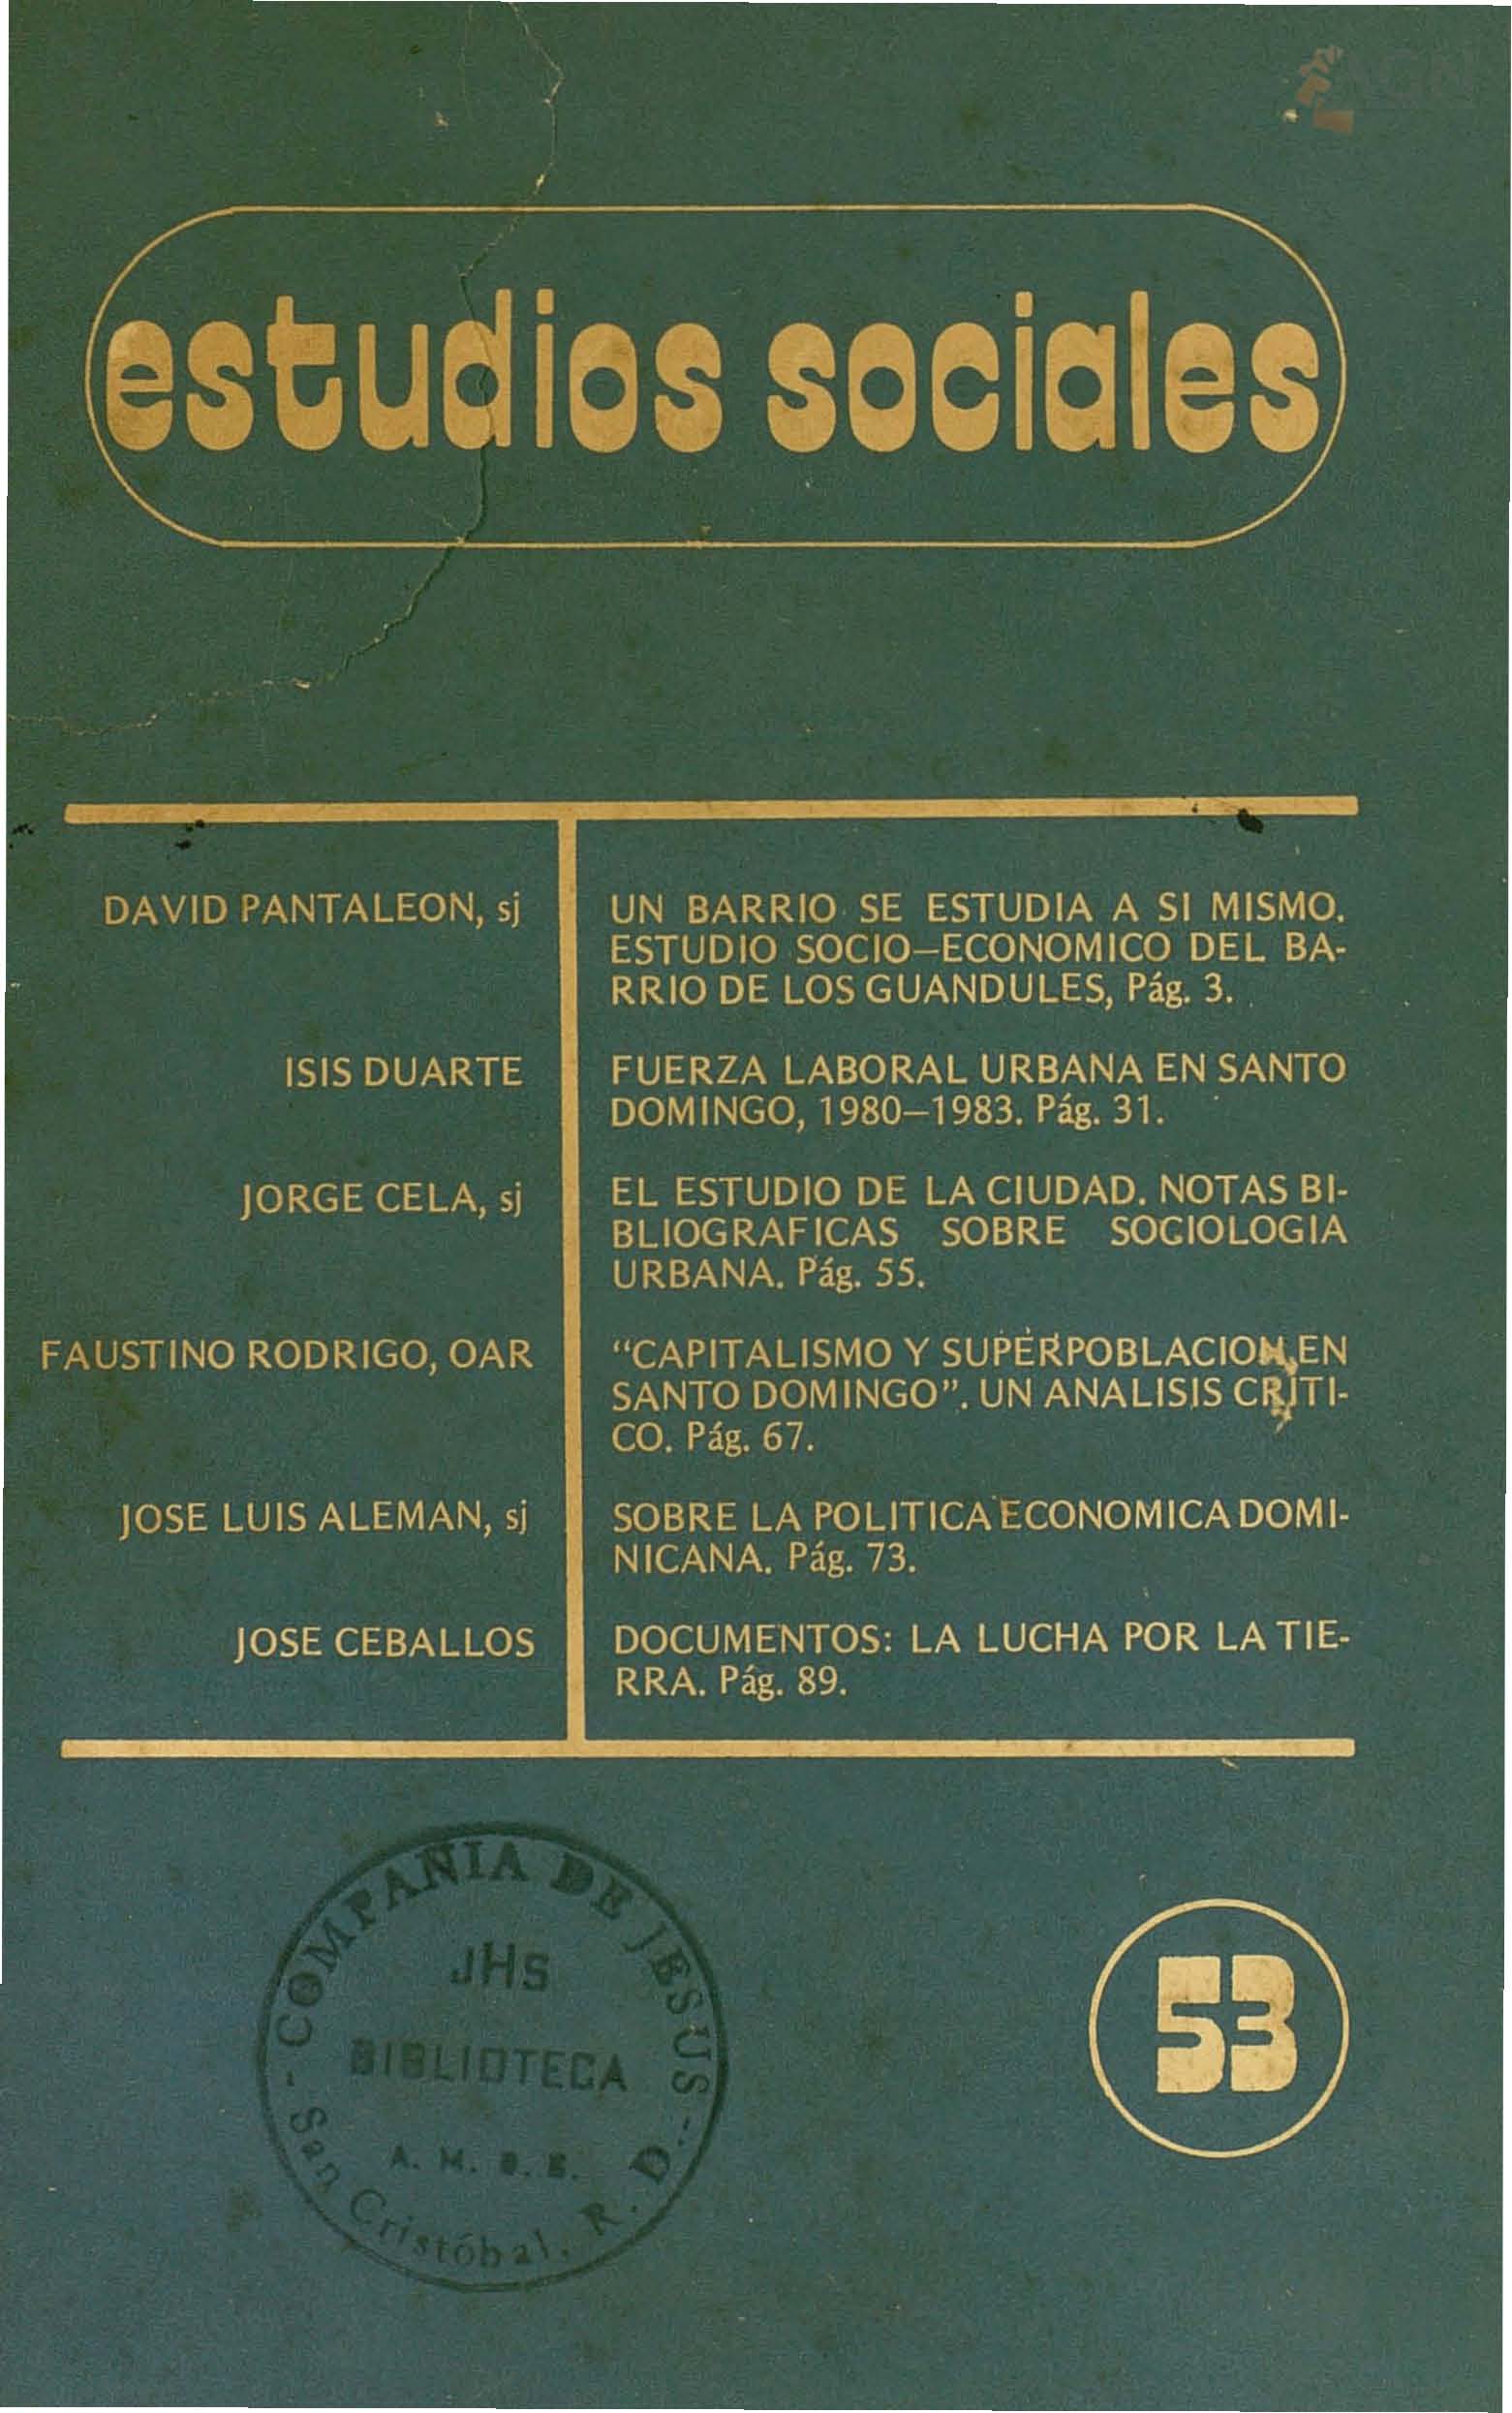 						View Vol. 16 No. 53 (1983): Sociología Urbana Dominicana
					